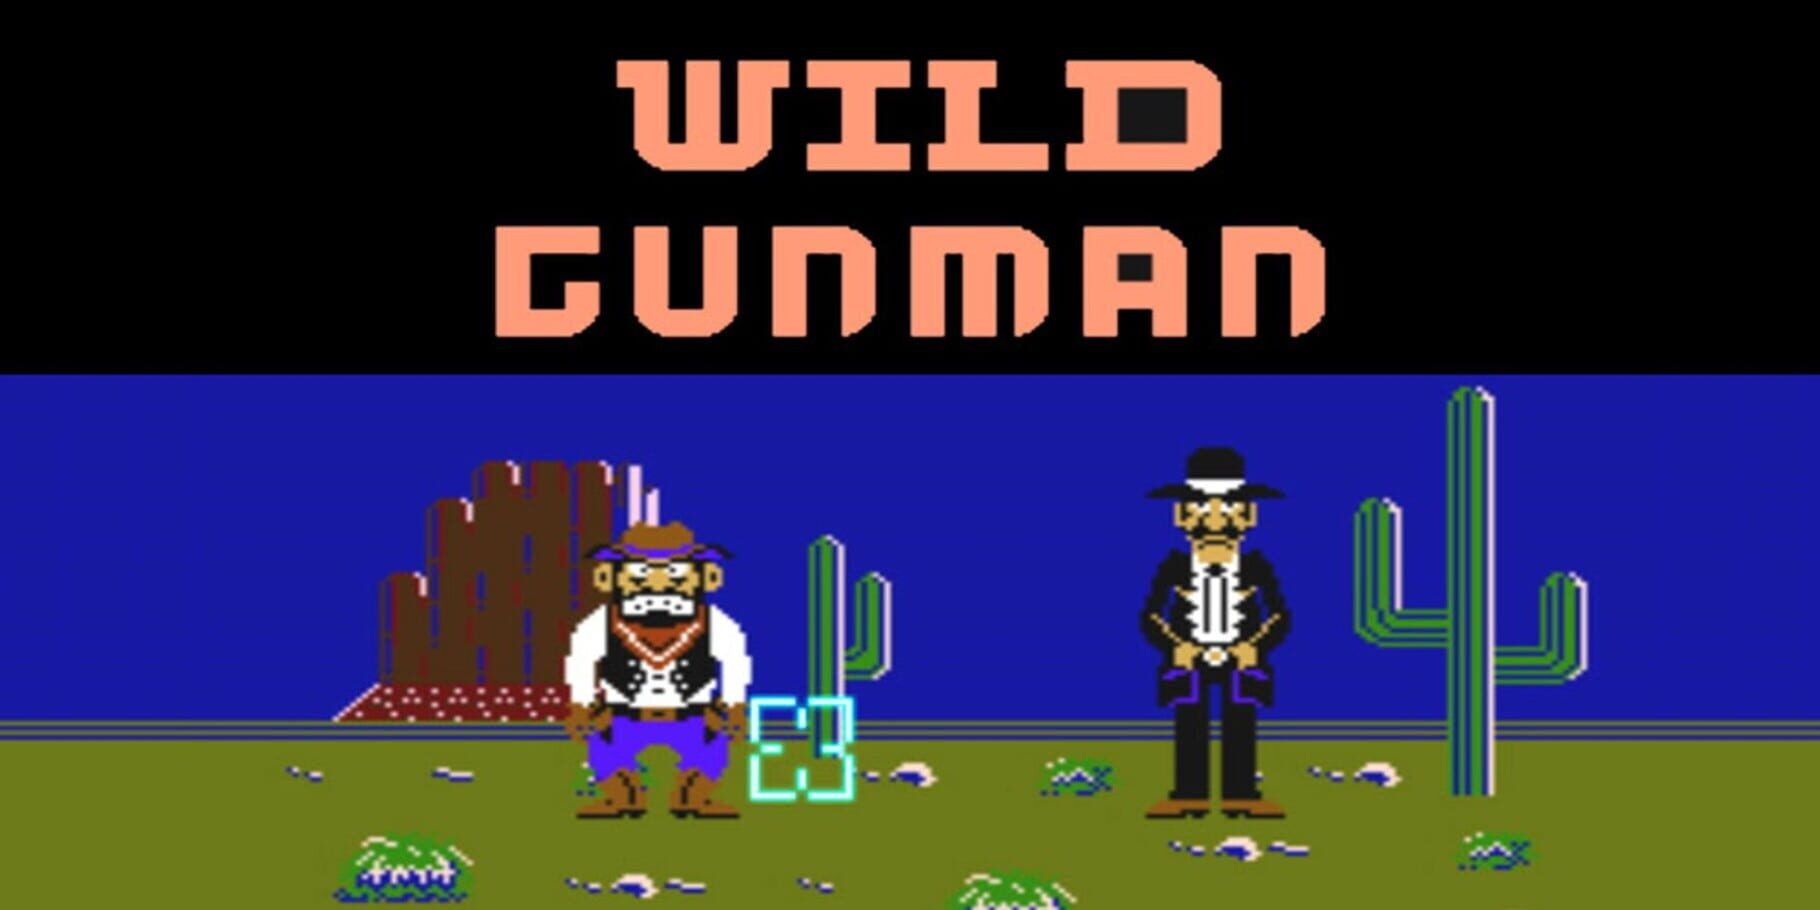 Arte - Wild Gunman